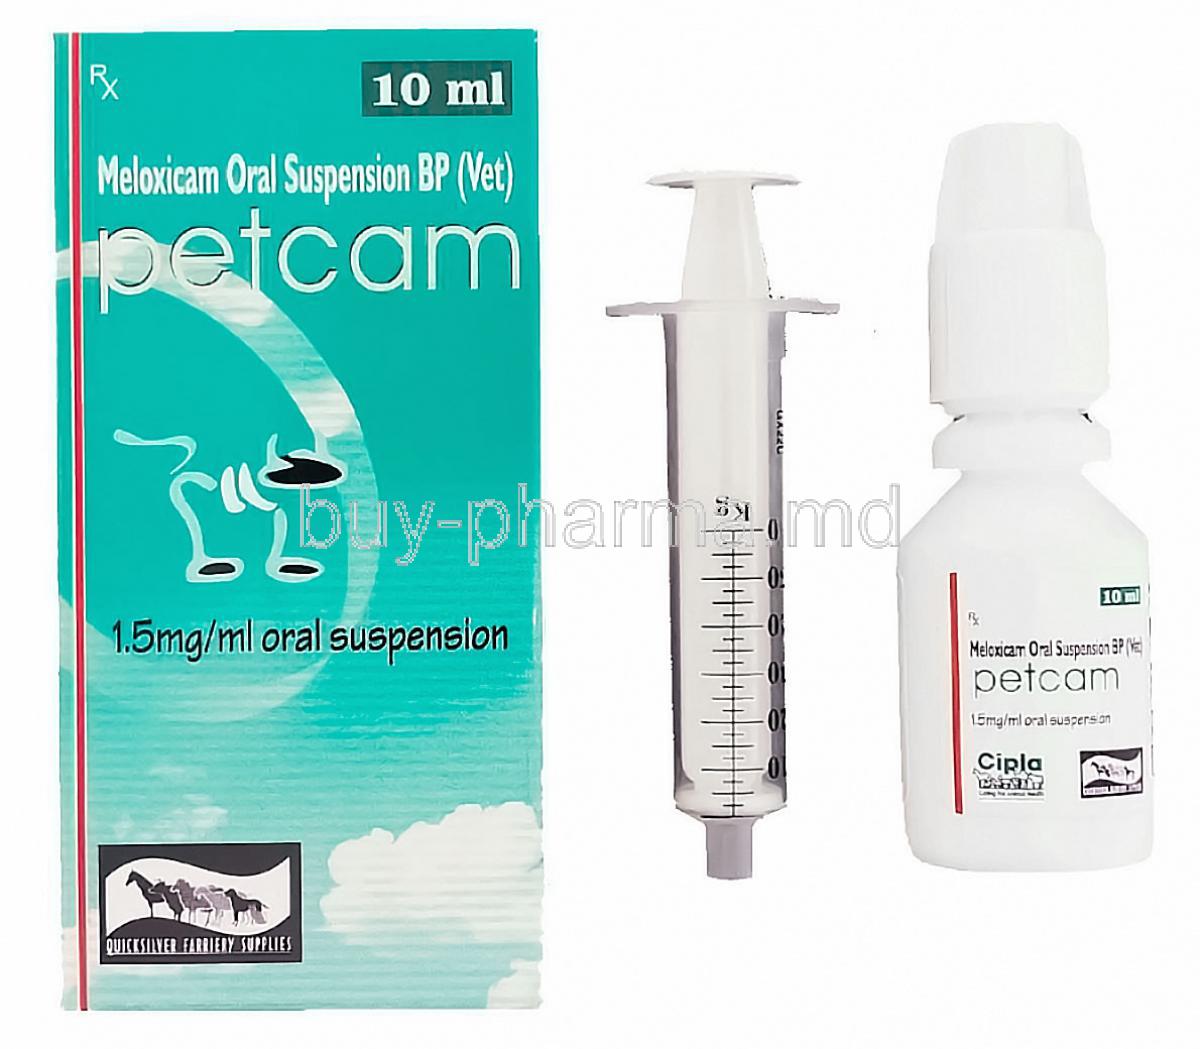 Petcam,  Generic Metacam,  Meloxicam  Oral Suspension